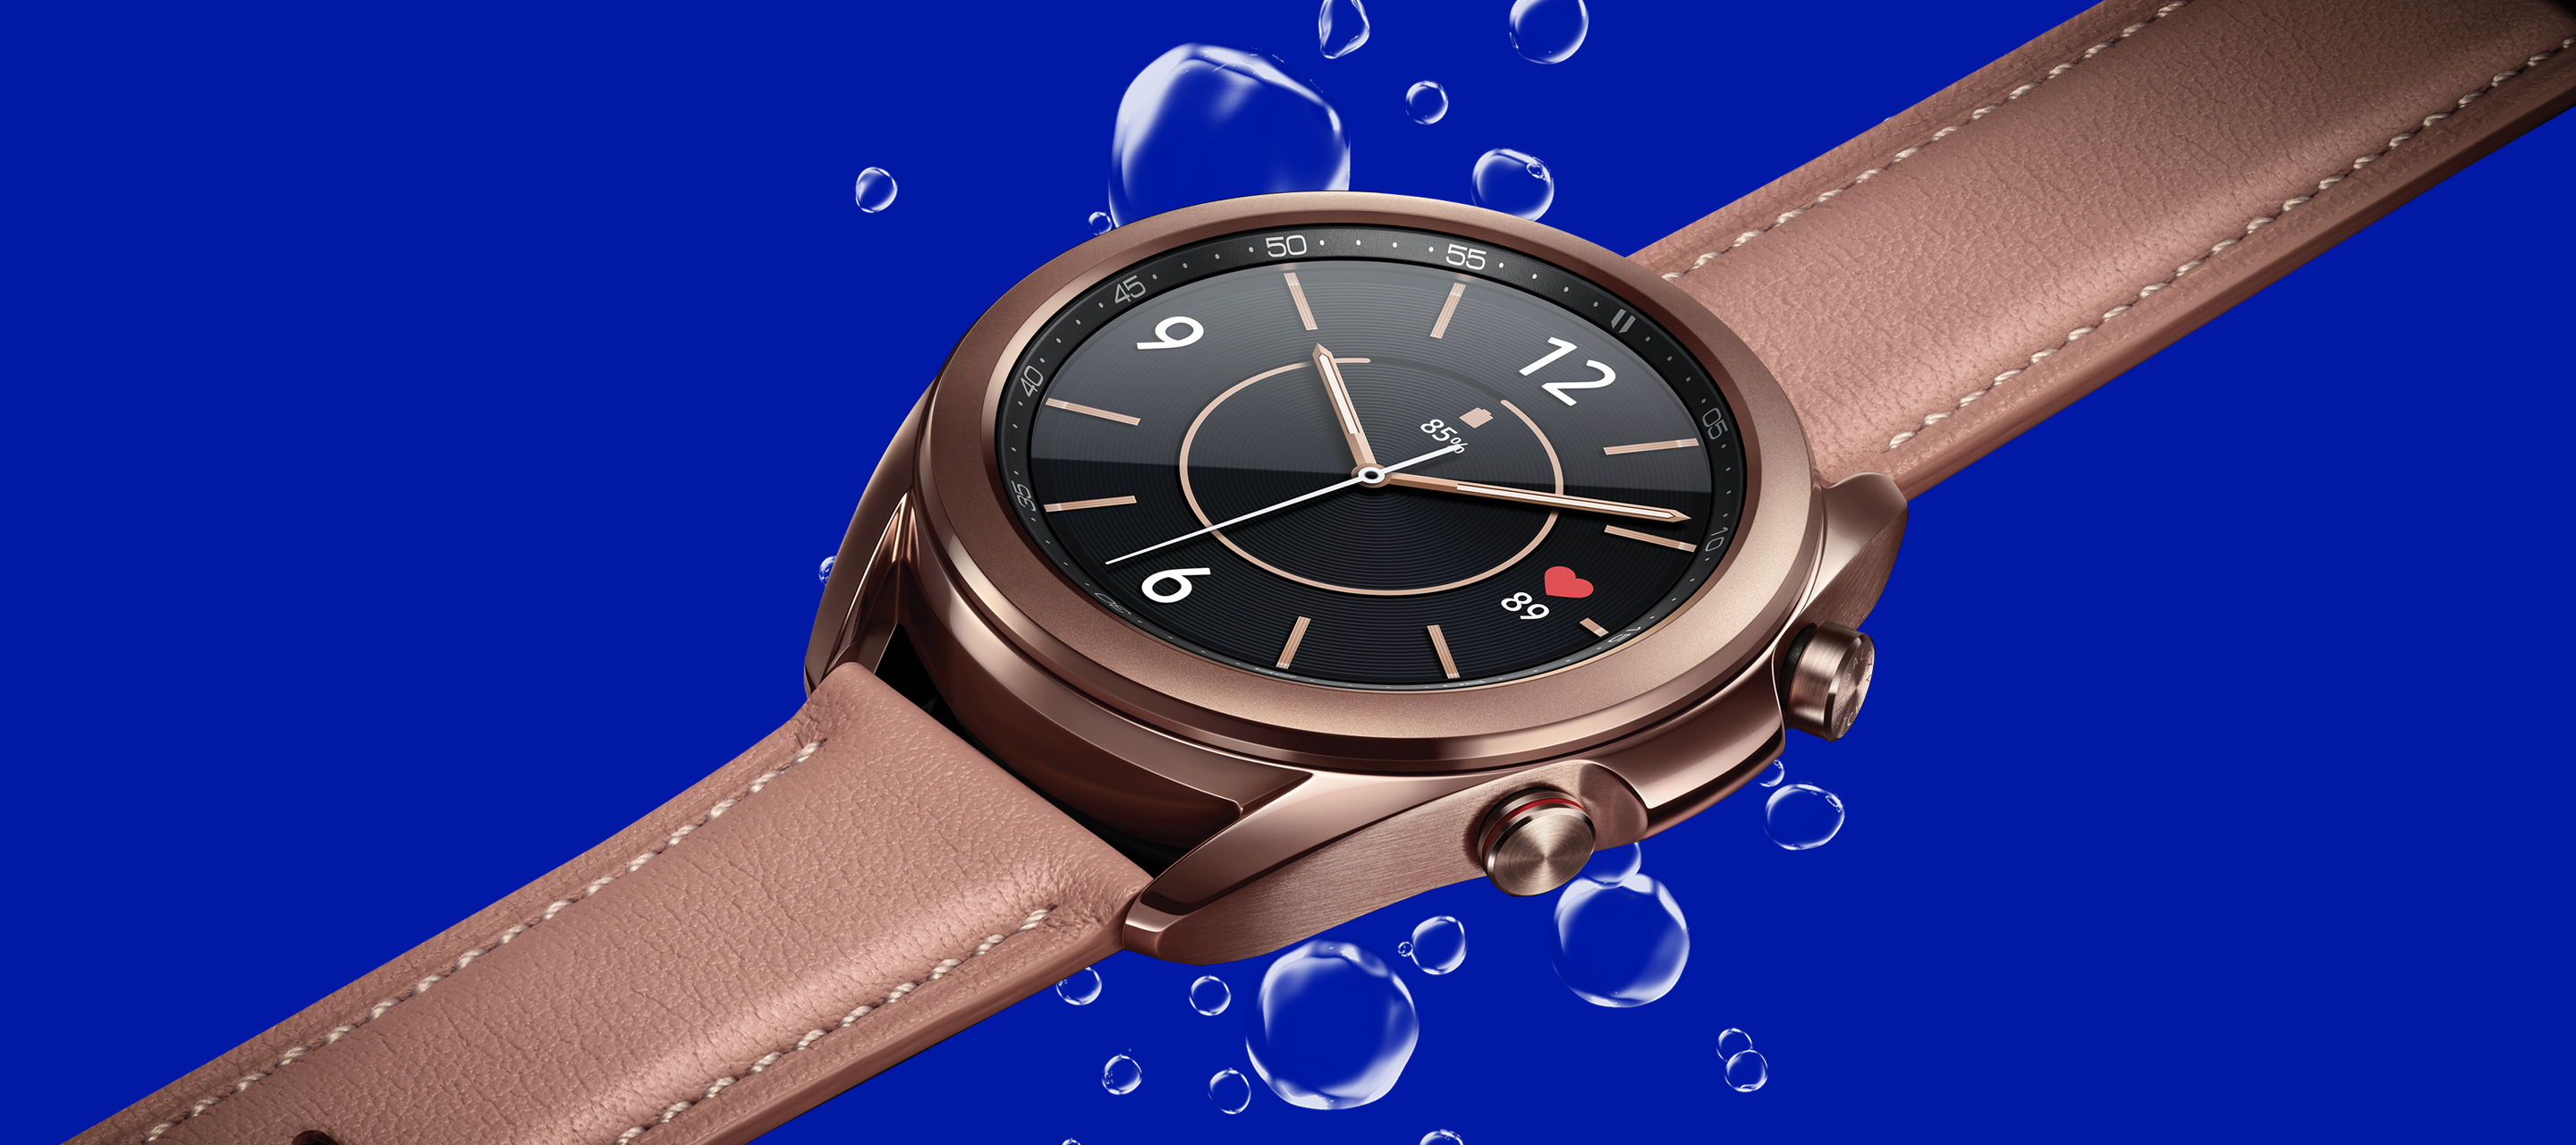 Neu bei O₂ - die Samsung Galaxy Watch3